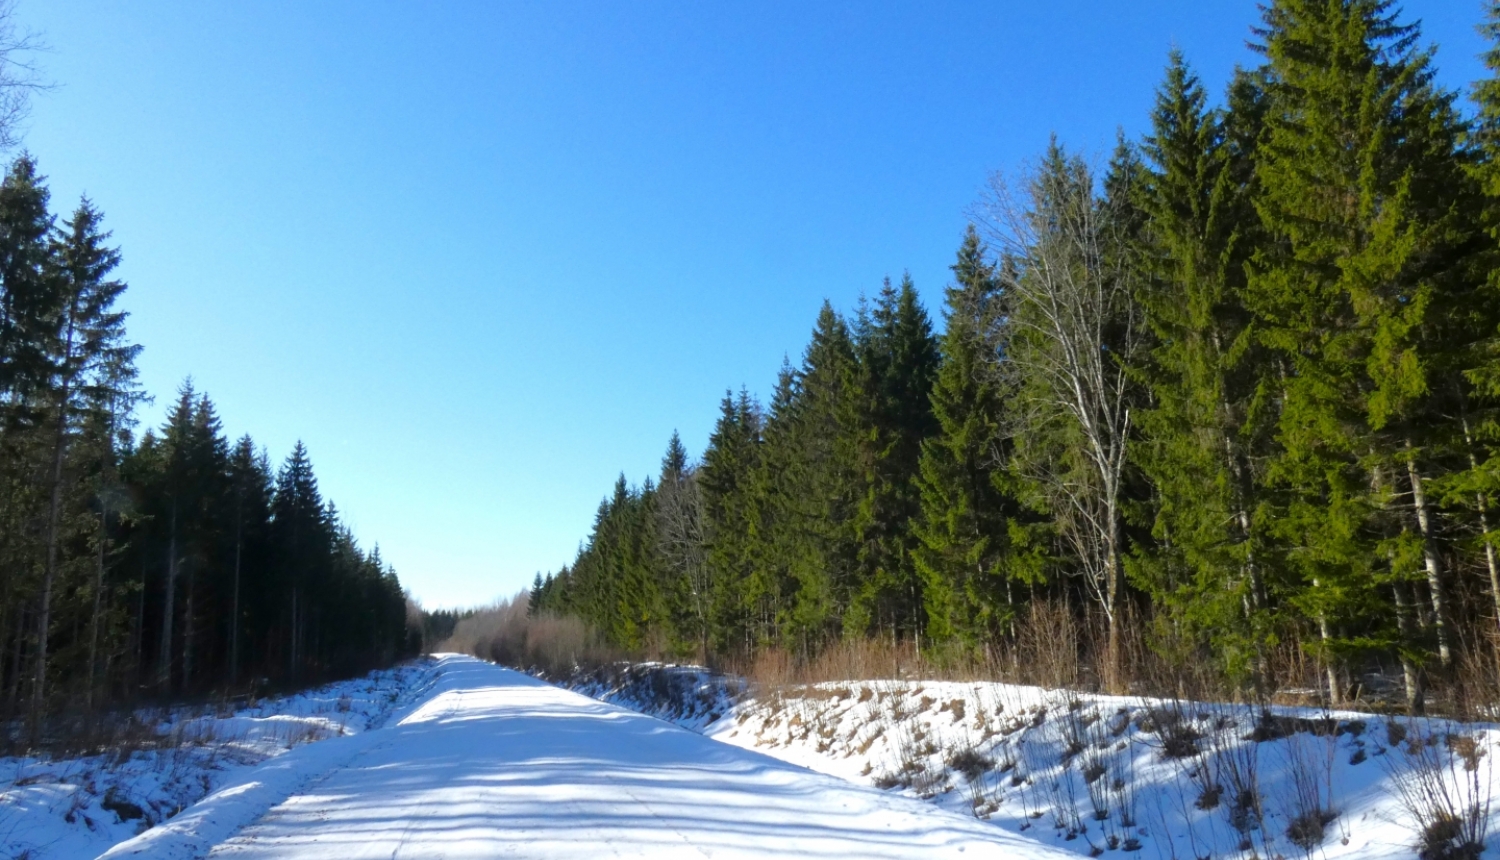 egļu mežs saulainā sniegaina ziemas diena, pa vidu mežam iet meža ceļš